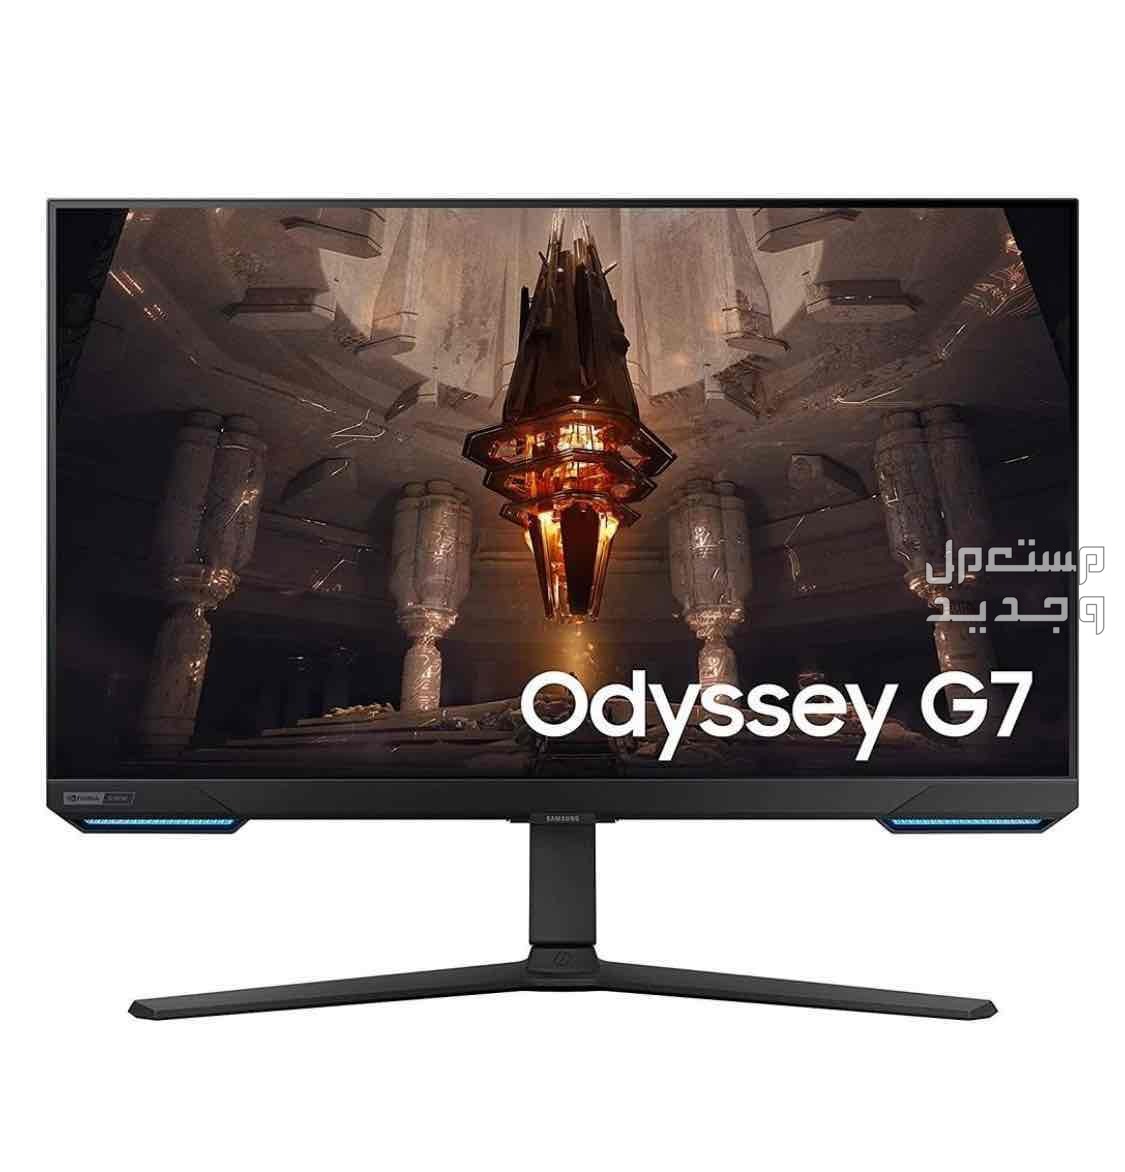 شاشة الألعاب Samsung Odyssey G7 مقاس 28 بوصة UHD 144 هرتز IPS، وقت استجابة 1 مللي ثانية (GTG)، متوافق مع G-Sync، 1 مليار لون، ألعاب HDR10+، Wi-Fi وبلوتوث، USB Hub 3.0، ETH / 2XHDMI / DP، أسو